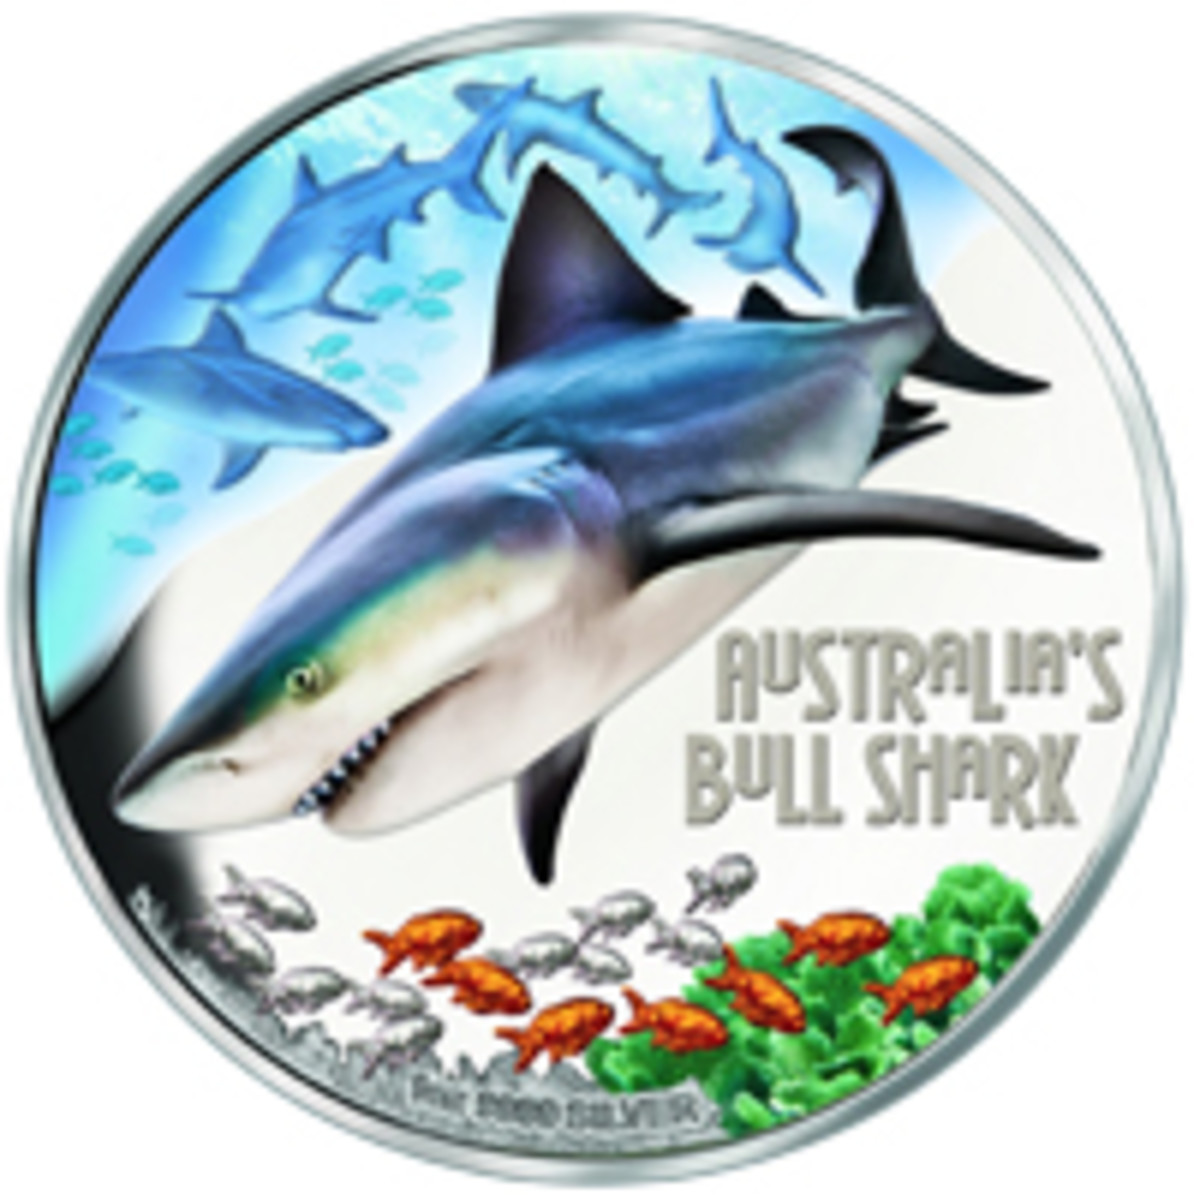 Australia Bull Shark